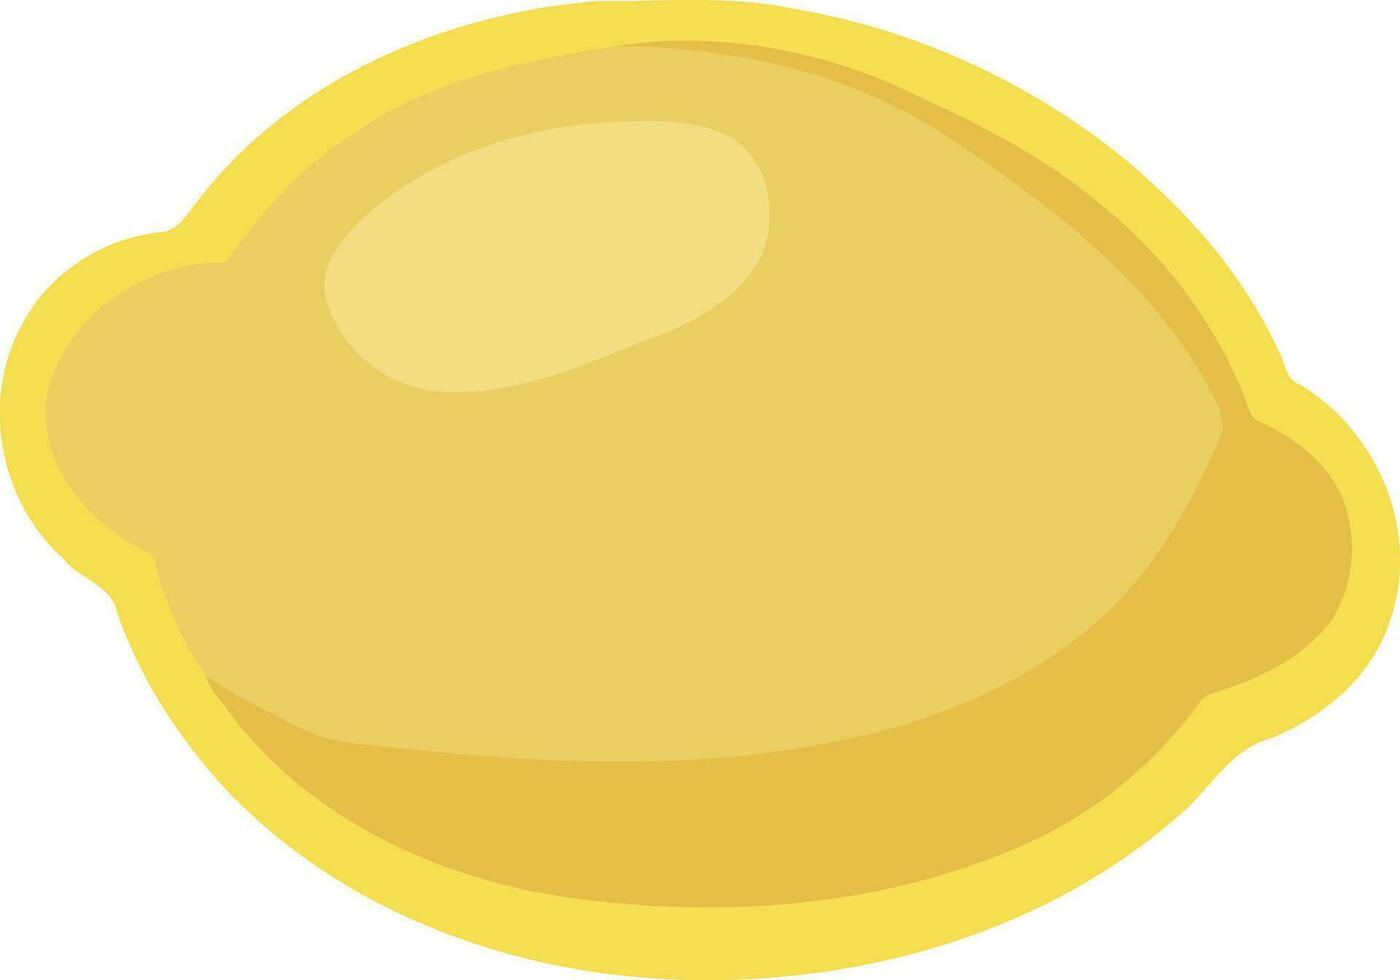 yellow lemon fruit isolated vector